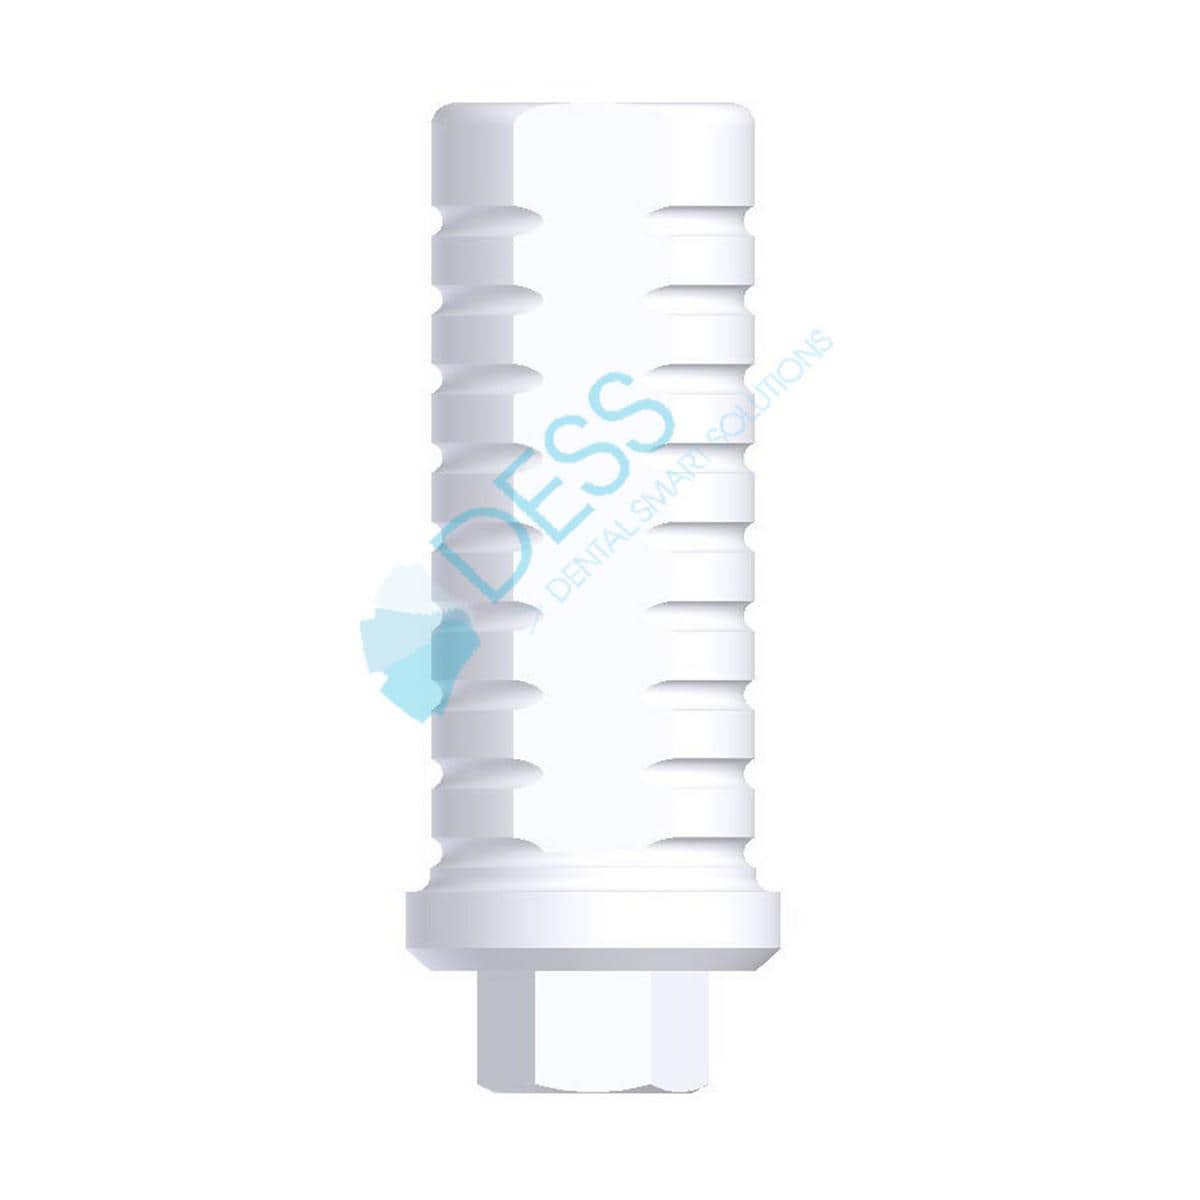 Kunsstoffzylinder - kompatibel mit Zimmer Screw-Vent® - RP Ø 4,5 mm, mit Rotationsschutz, Packung 1 Stück